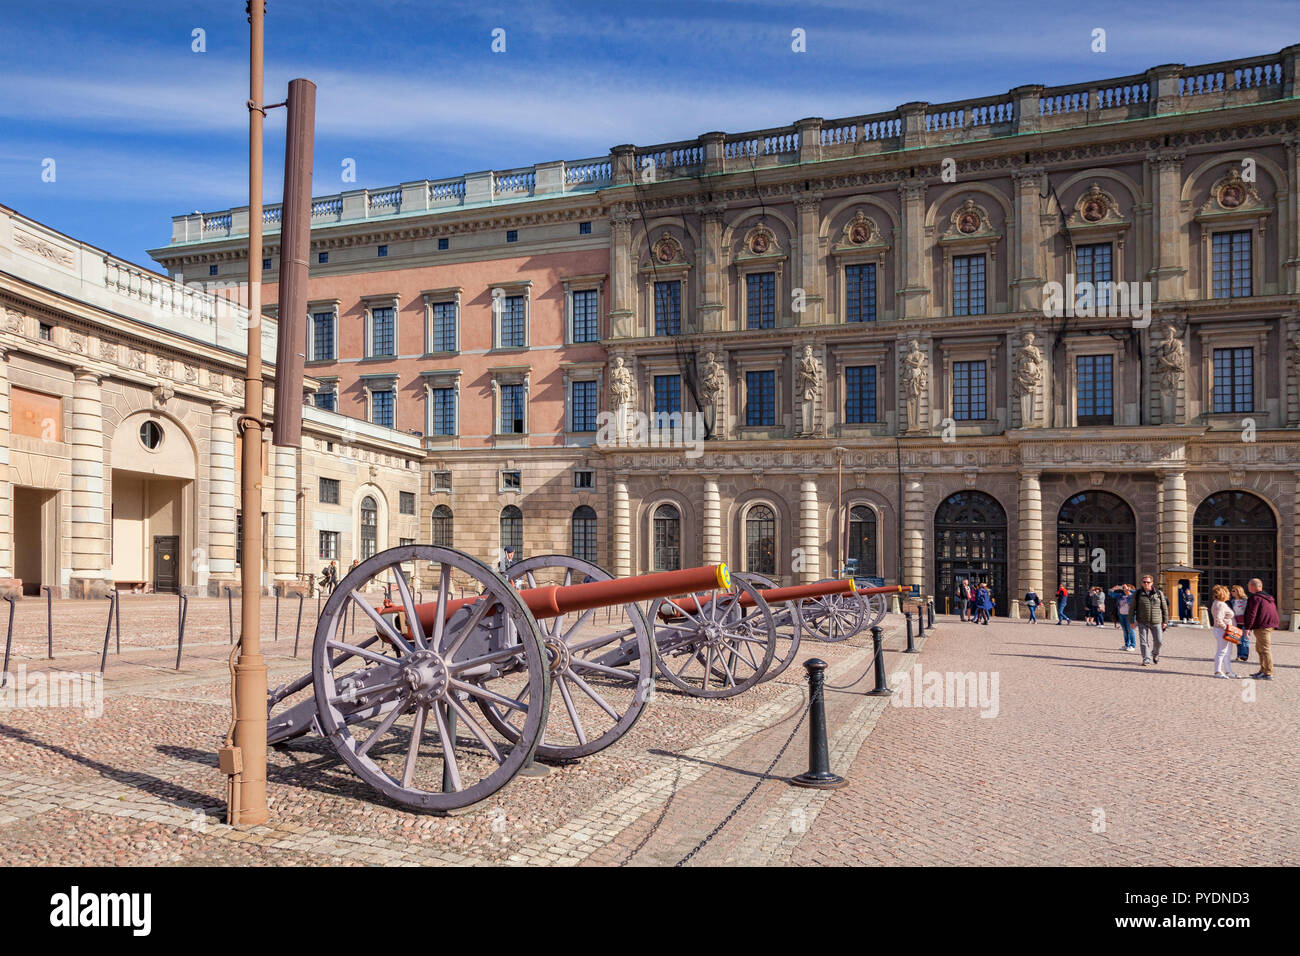 16 de septiembre de 2018: Estocolmo, Suecia - cañones en exhibición en el Palacio Real. Foto de stock